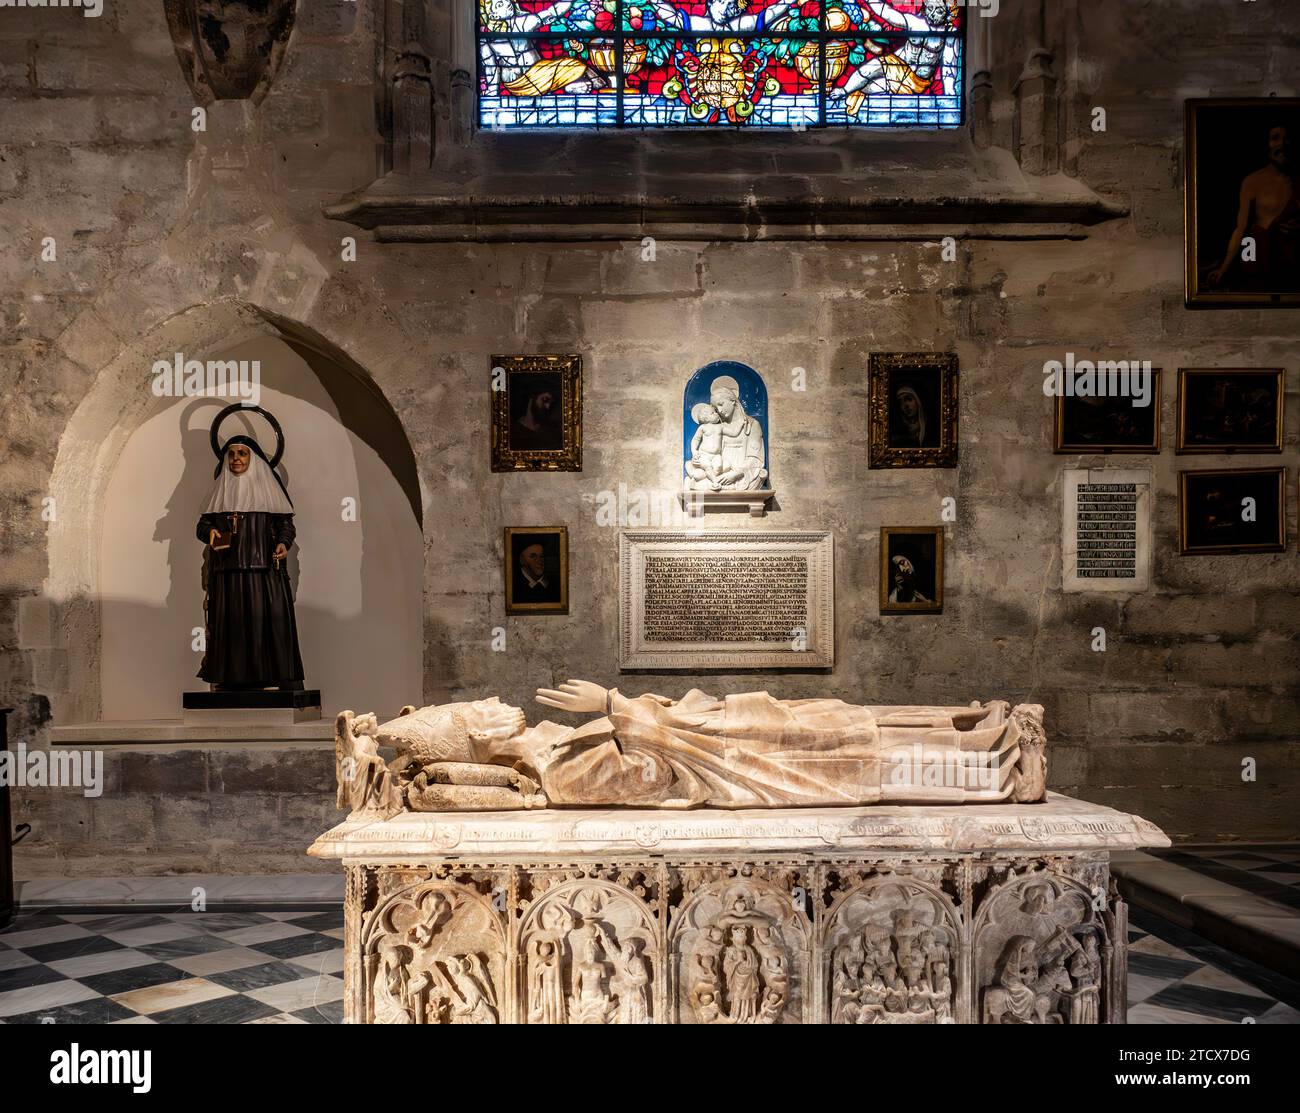 La tombe de l'archevêque Gonzalo de Mena y Roelas, archevêque de Séville Espagne du 14e siècle dans la cathédrale de Séville. Banque D'Images